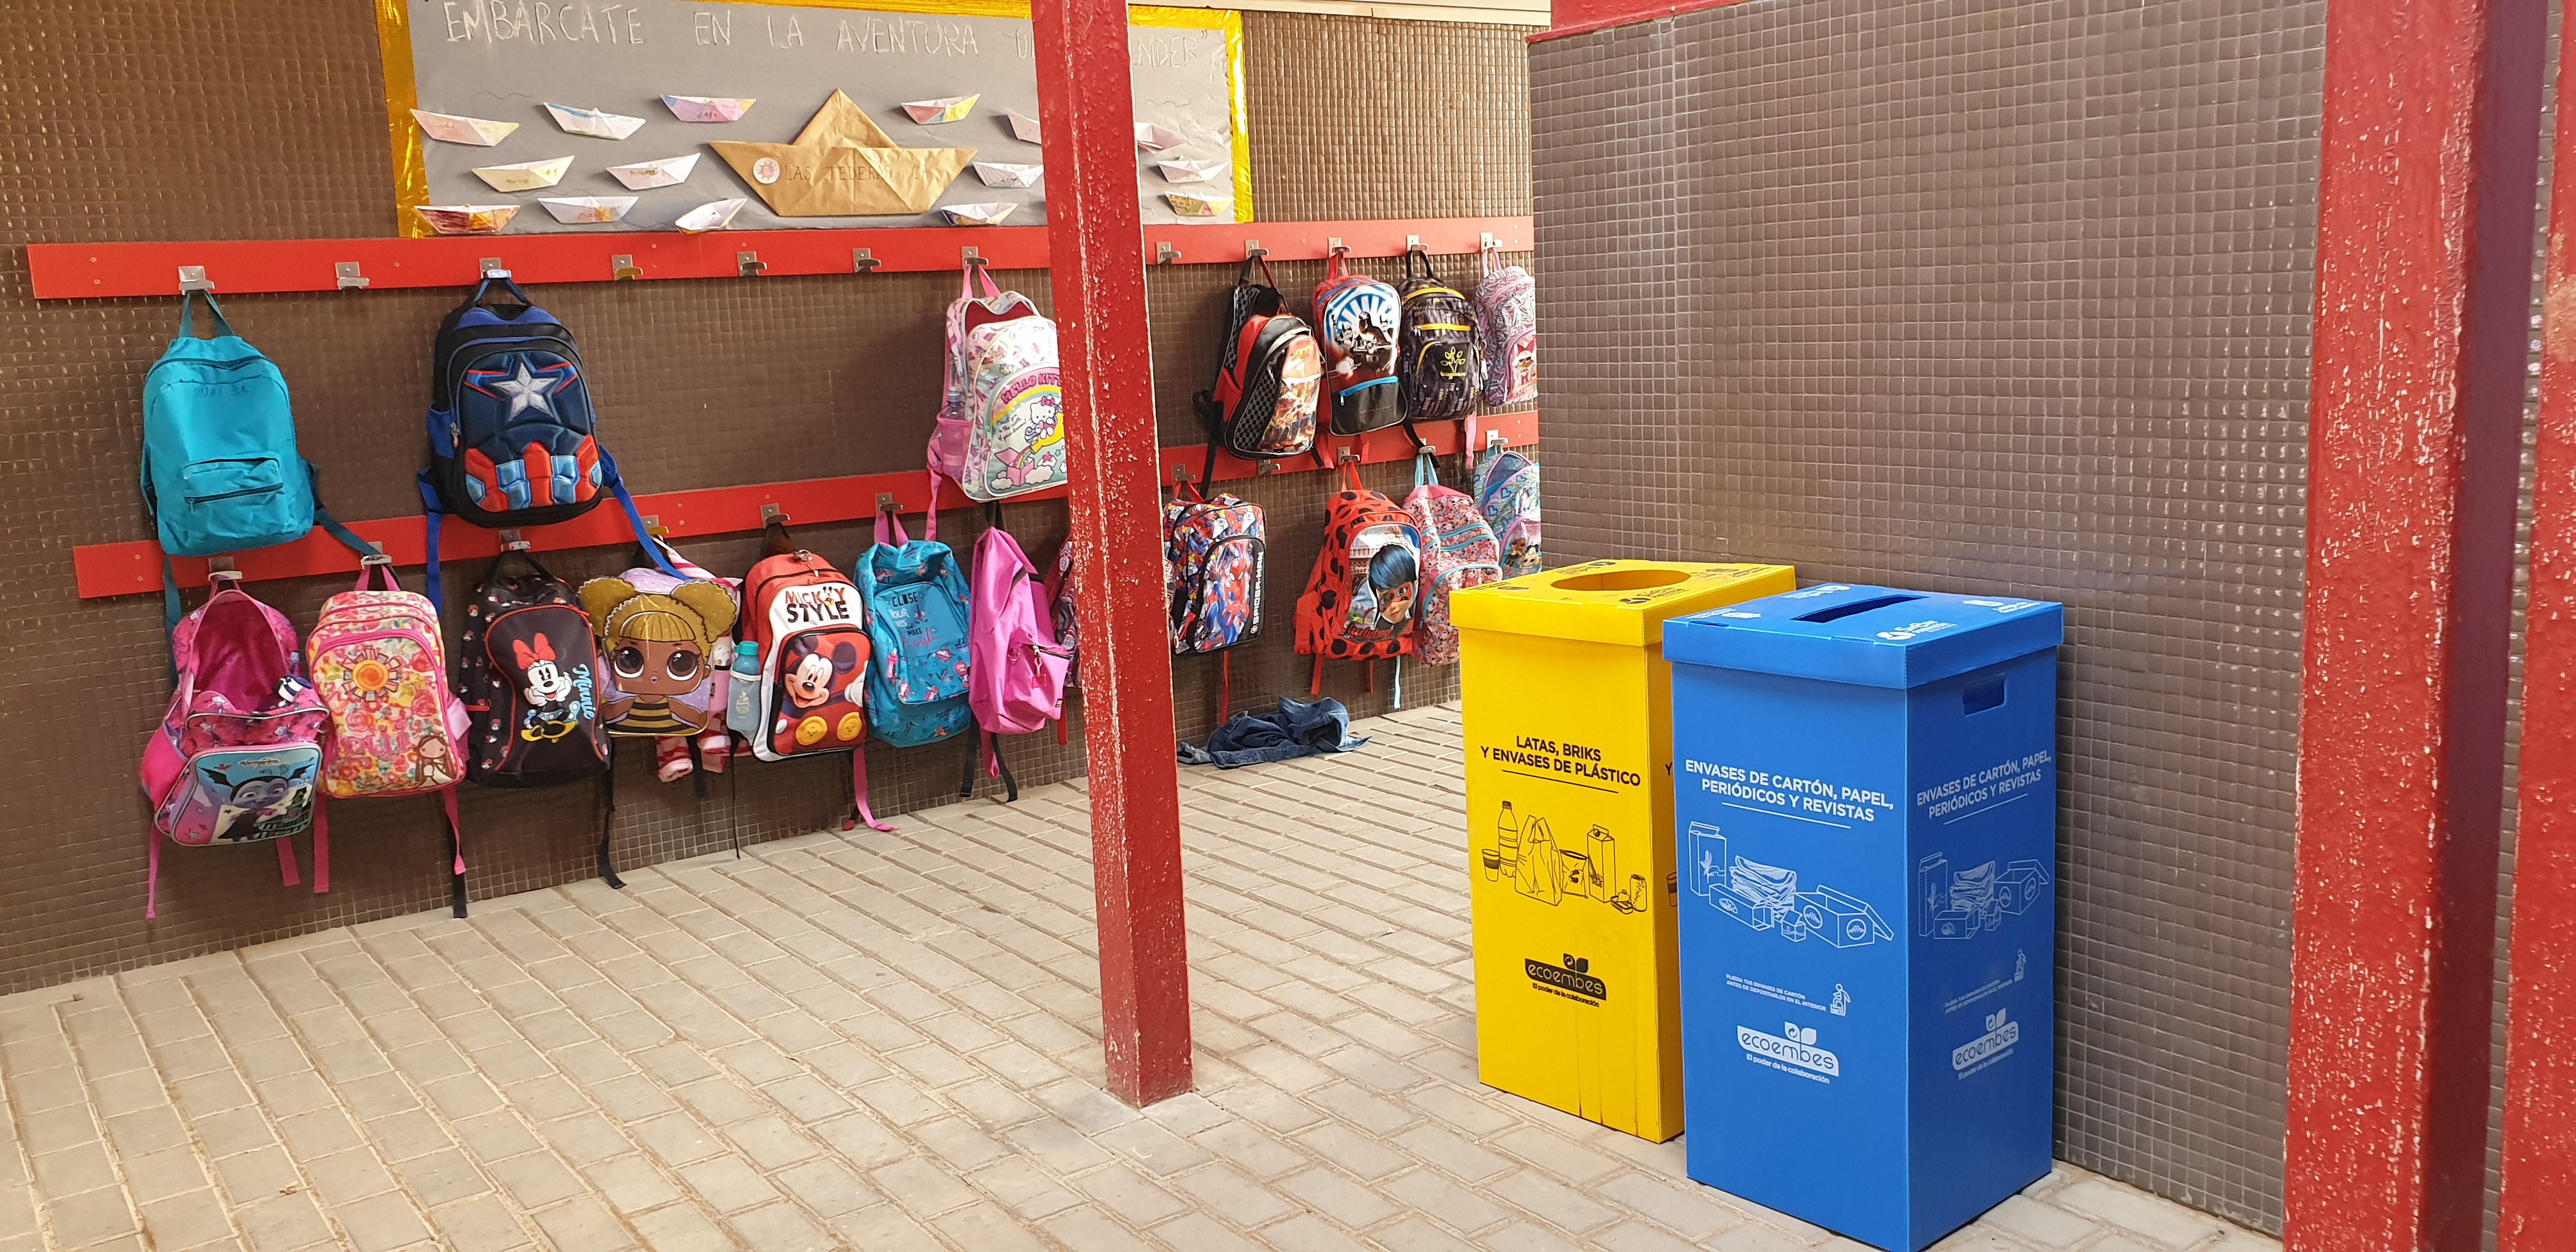 El Ayuntamiento reparte papeleras de cartón en todos los centros educativos para promover el reciclaje y la sostenibilidad 